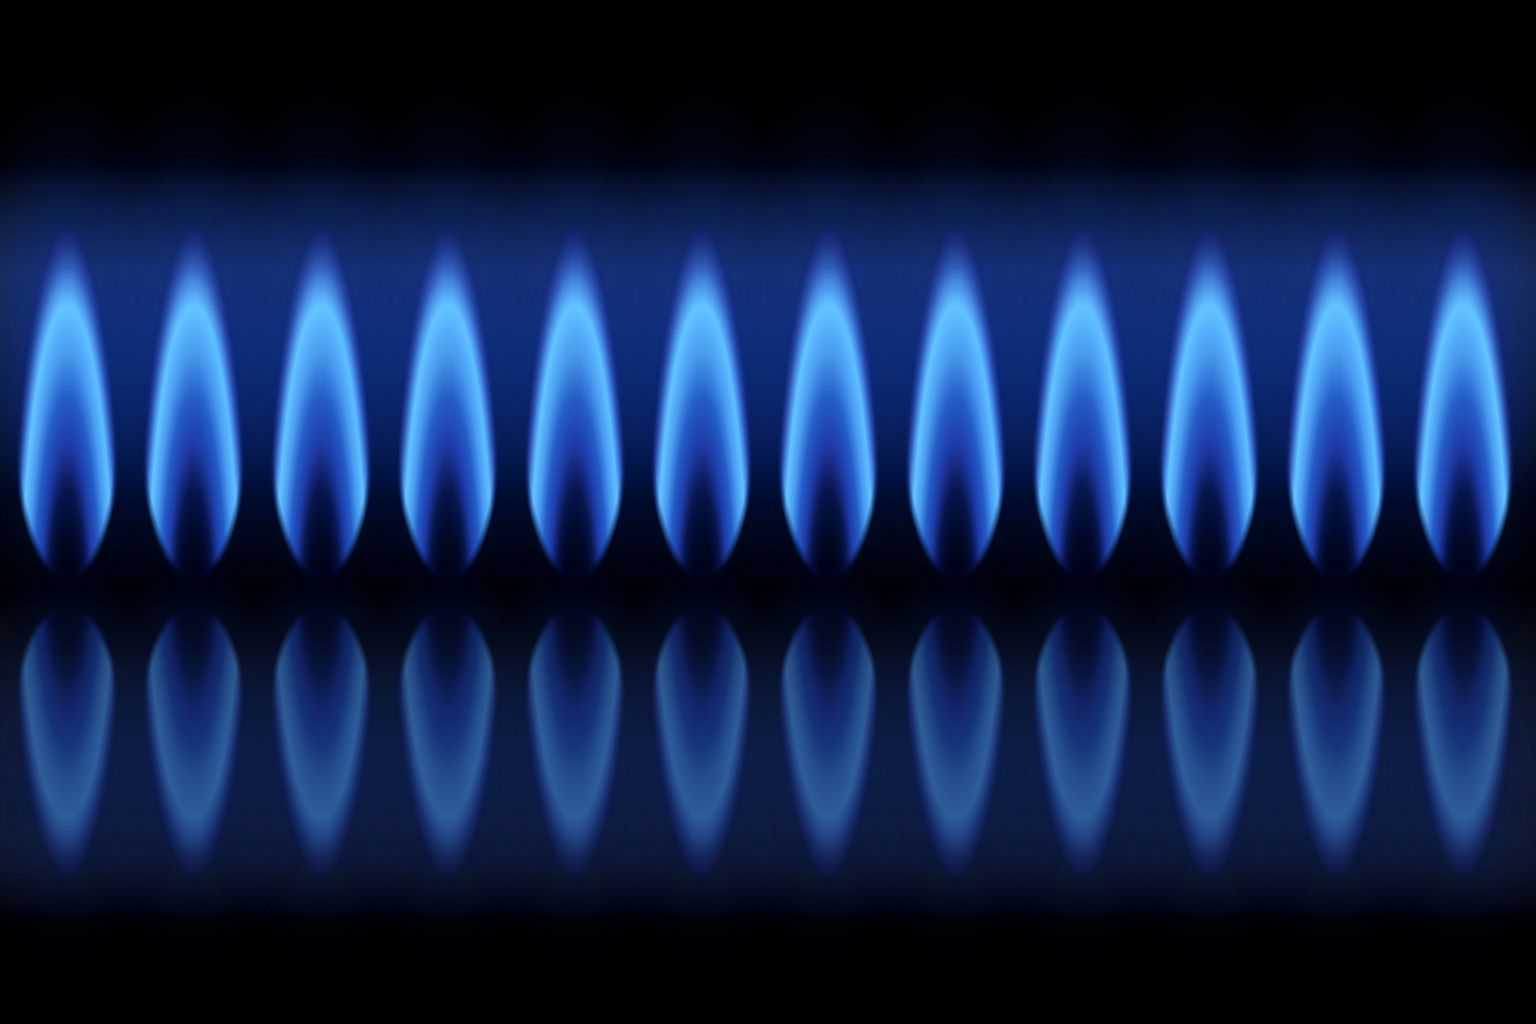 Kein Ende bei Gaspreissteigerungen in Sicht